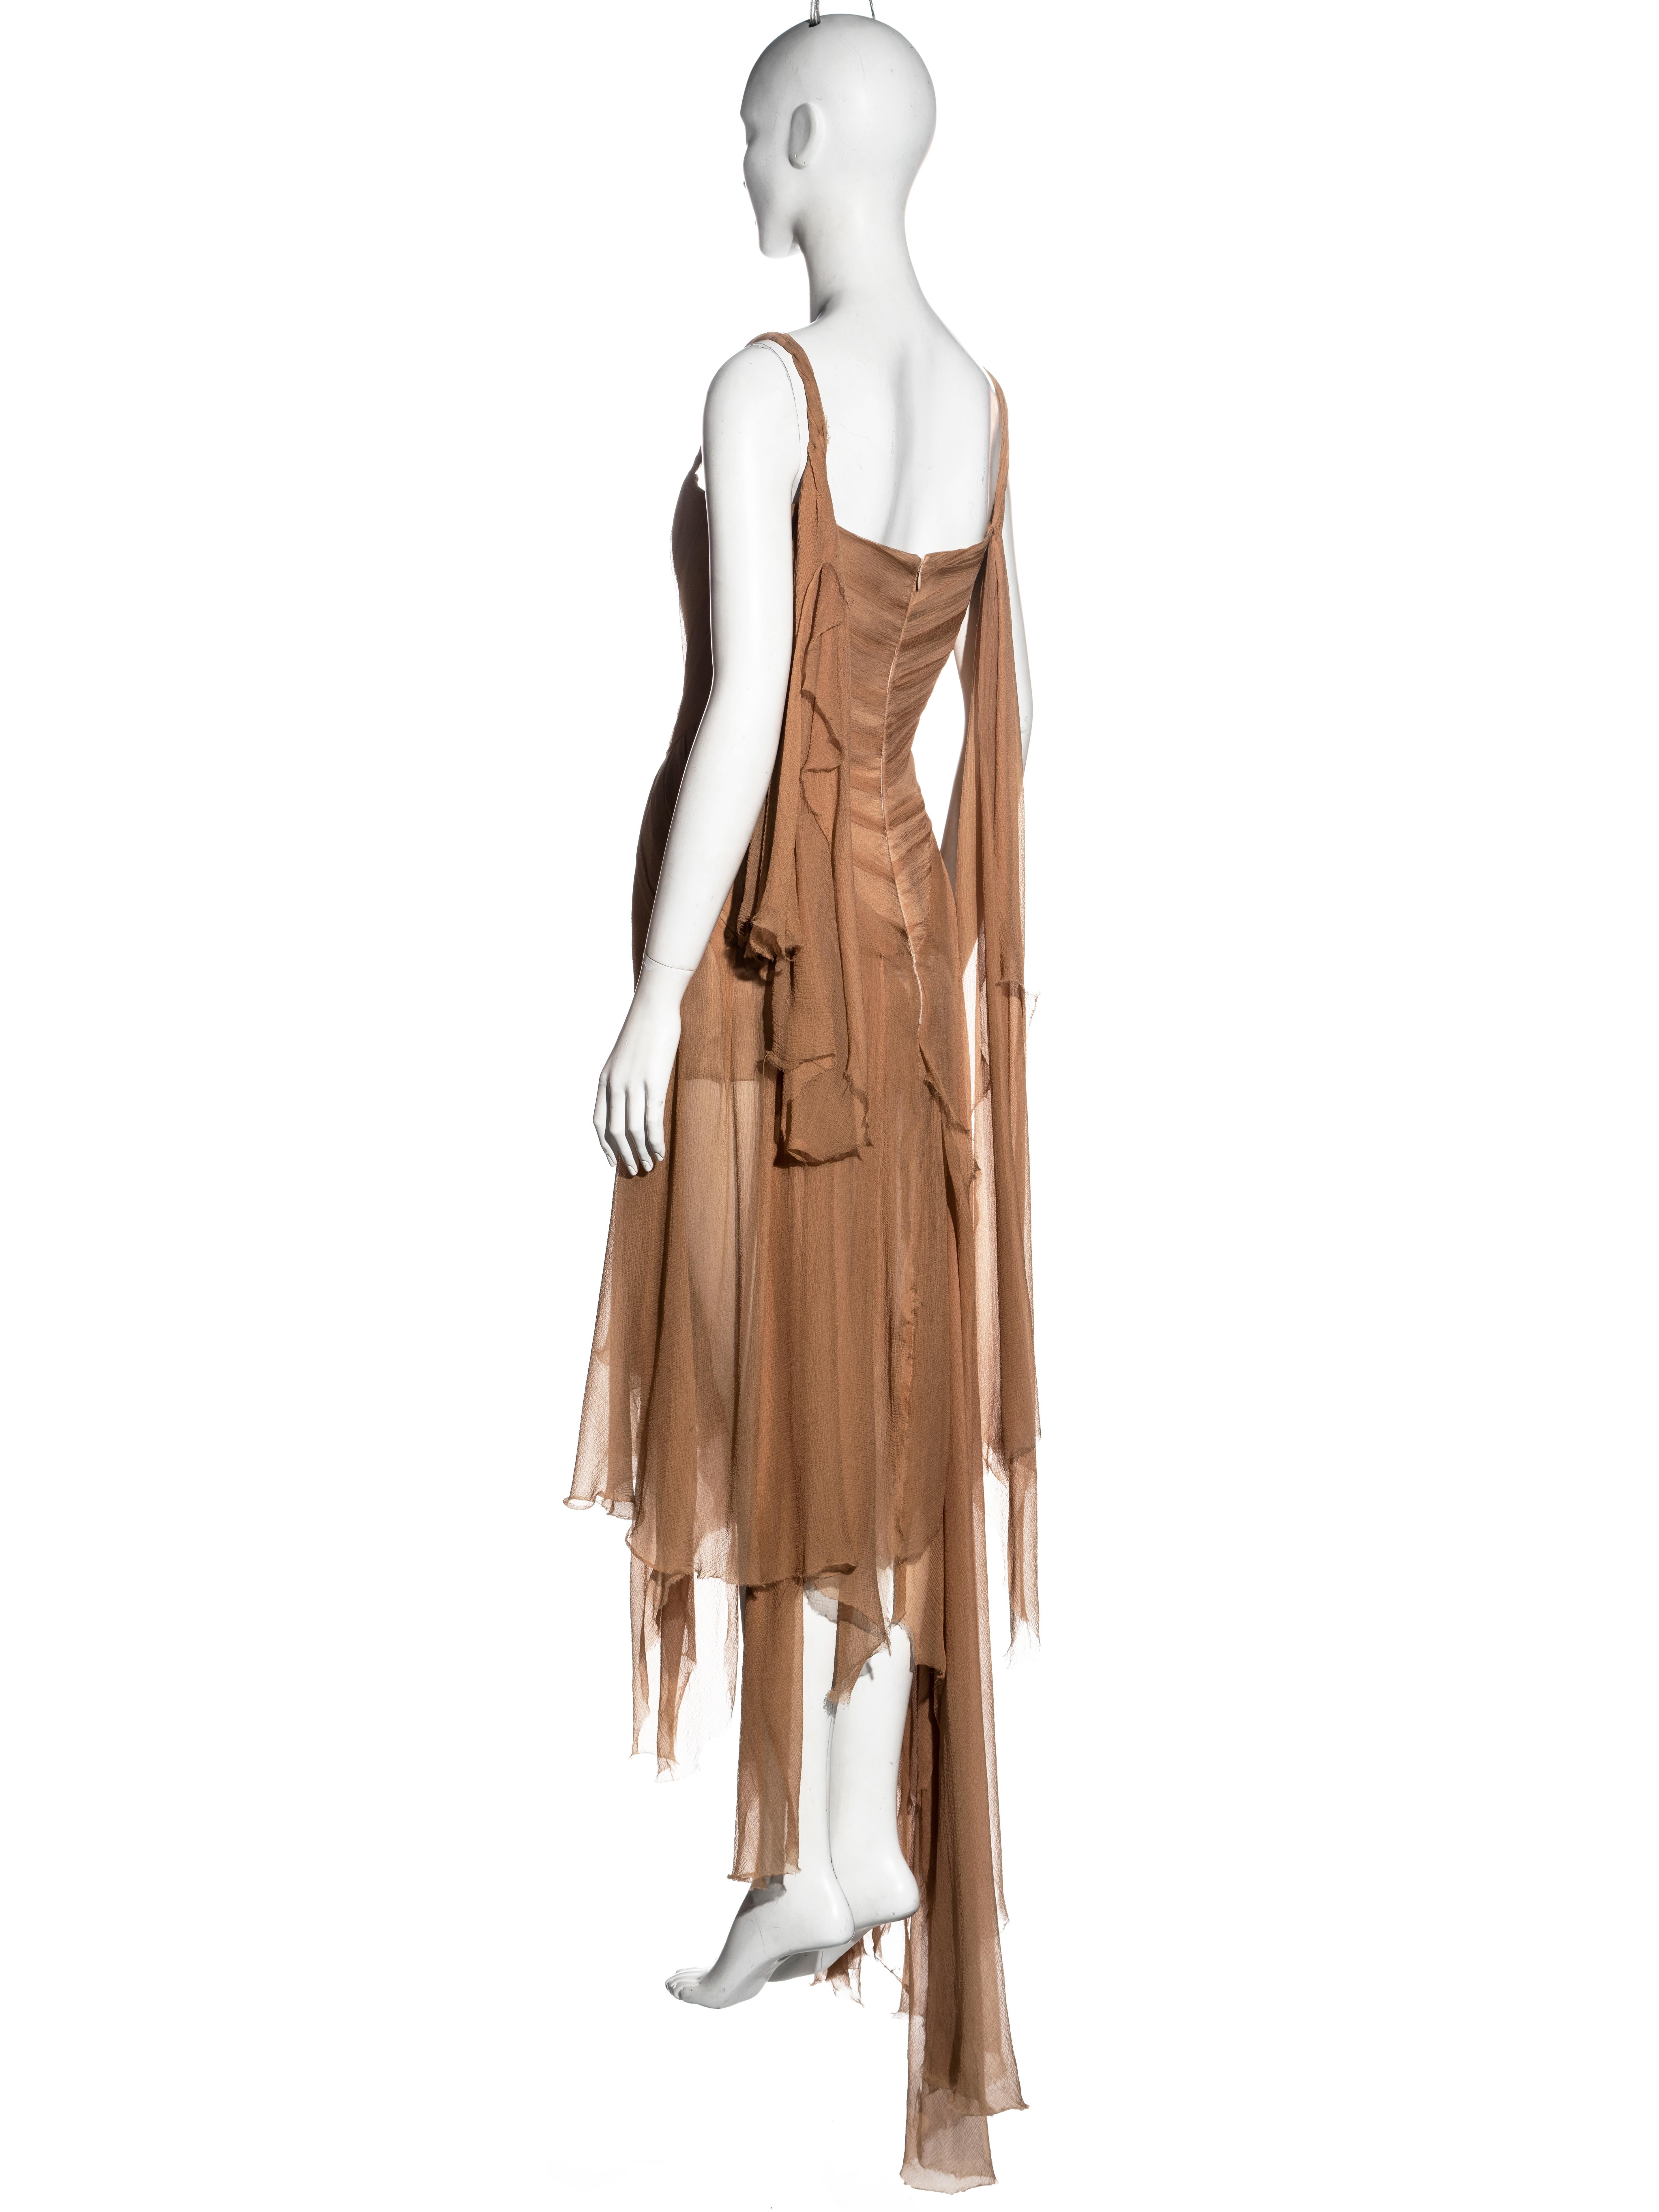 Alexander McQueen nude silk chiffon shipwreck evening dress, ss 2003 For Sale 2